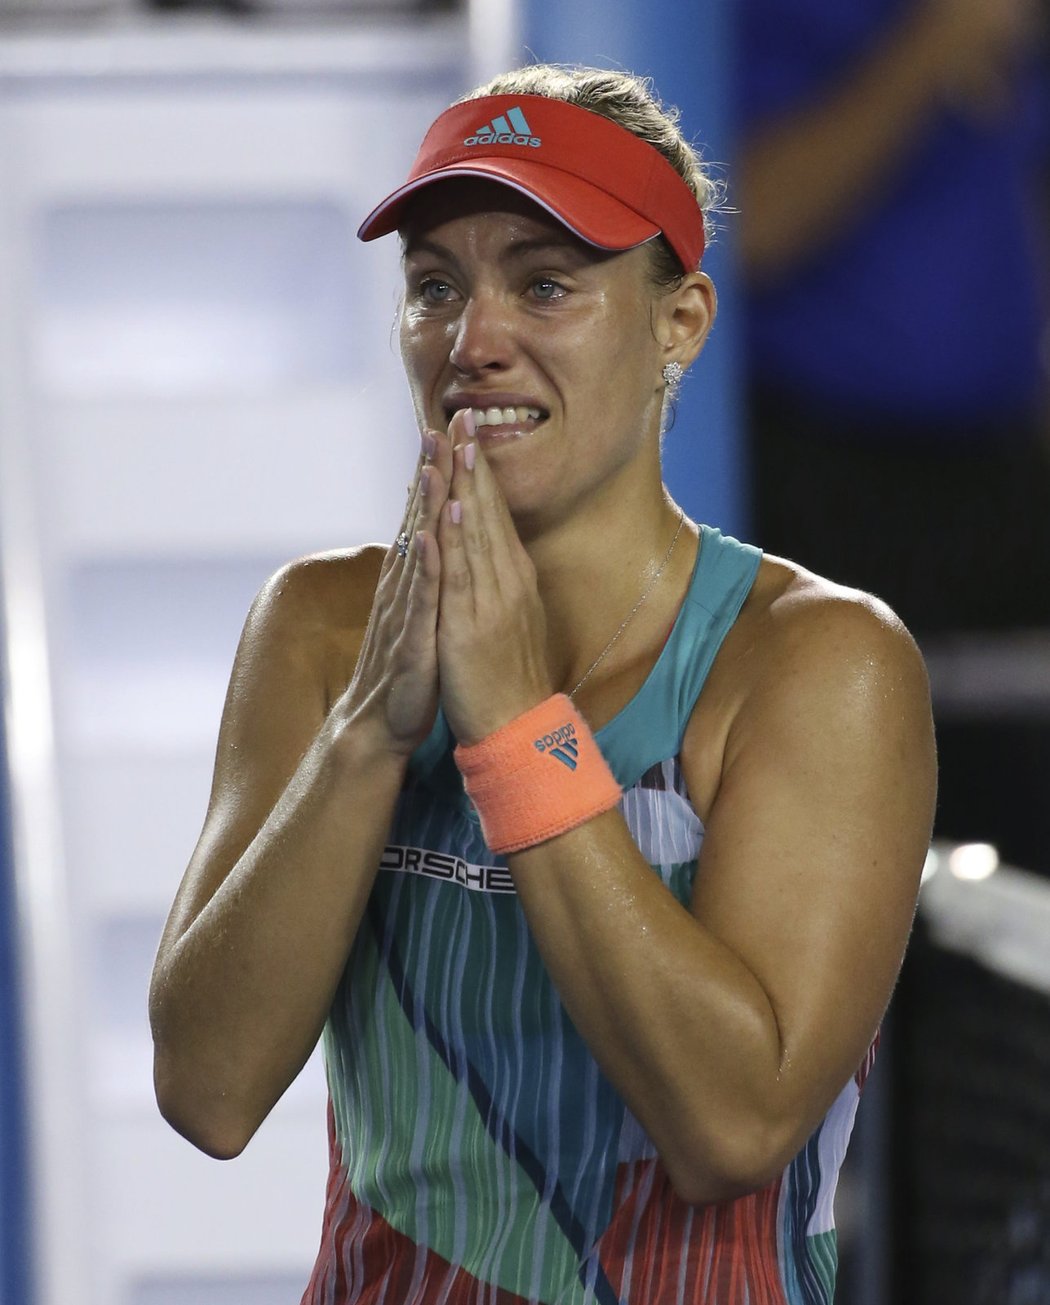 To není sen, to je pravda. První grandslamový titul je doma. Německá tenistka Angelique Kerberová vyhrála Australian Open, když ve finále zdolala favorizovanou světovou jedničku a obhájkyni Serenu Williamsovou z USA 6:4, 3:6, 6:4.